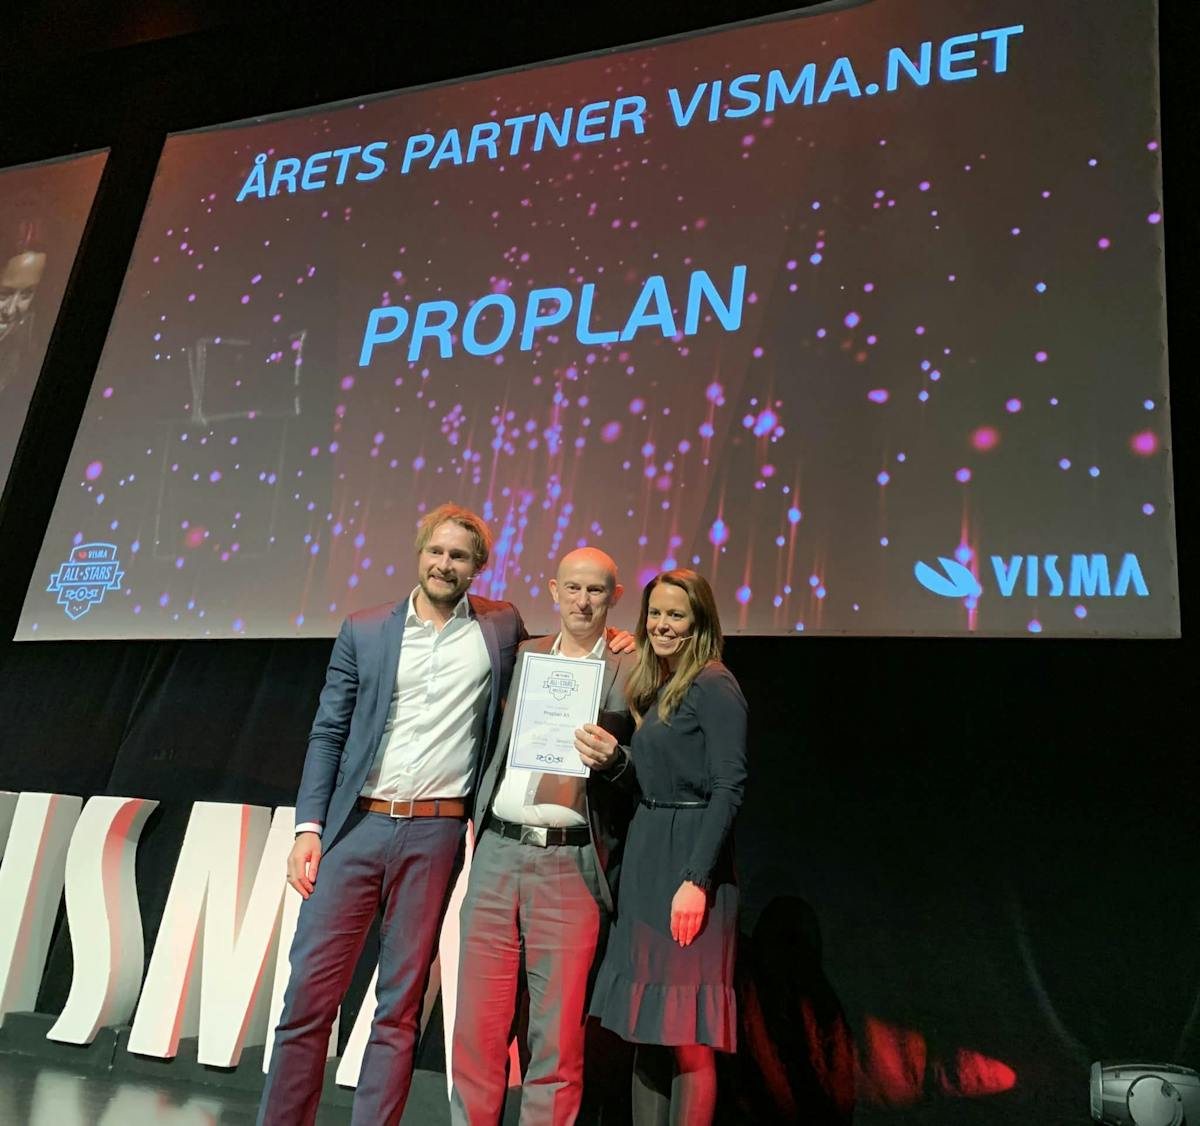 To menn og en dame står på en scene der den ene mannen har mottatt en pris med en storskjerm i bakgrunnen der det står at Proplan er vinner av prisen årets partner visma.net